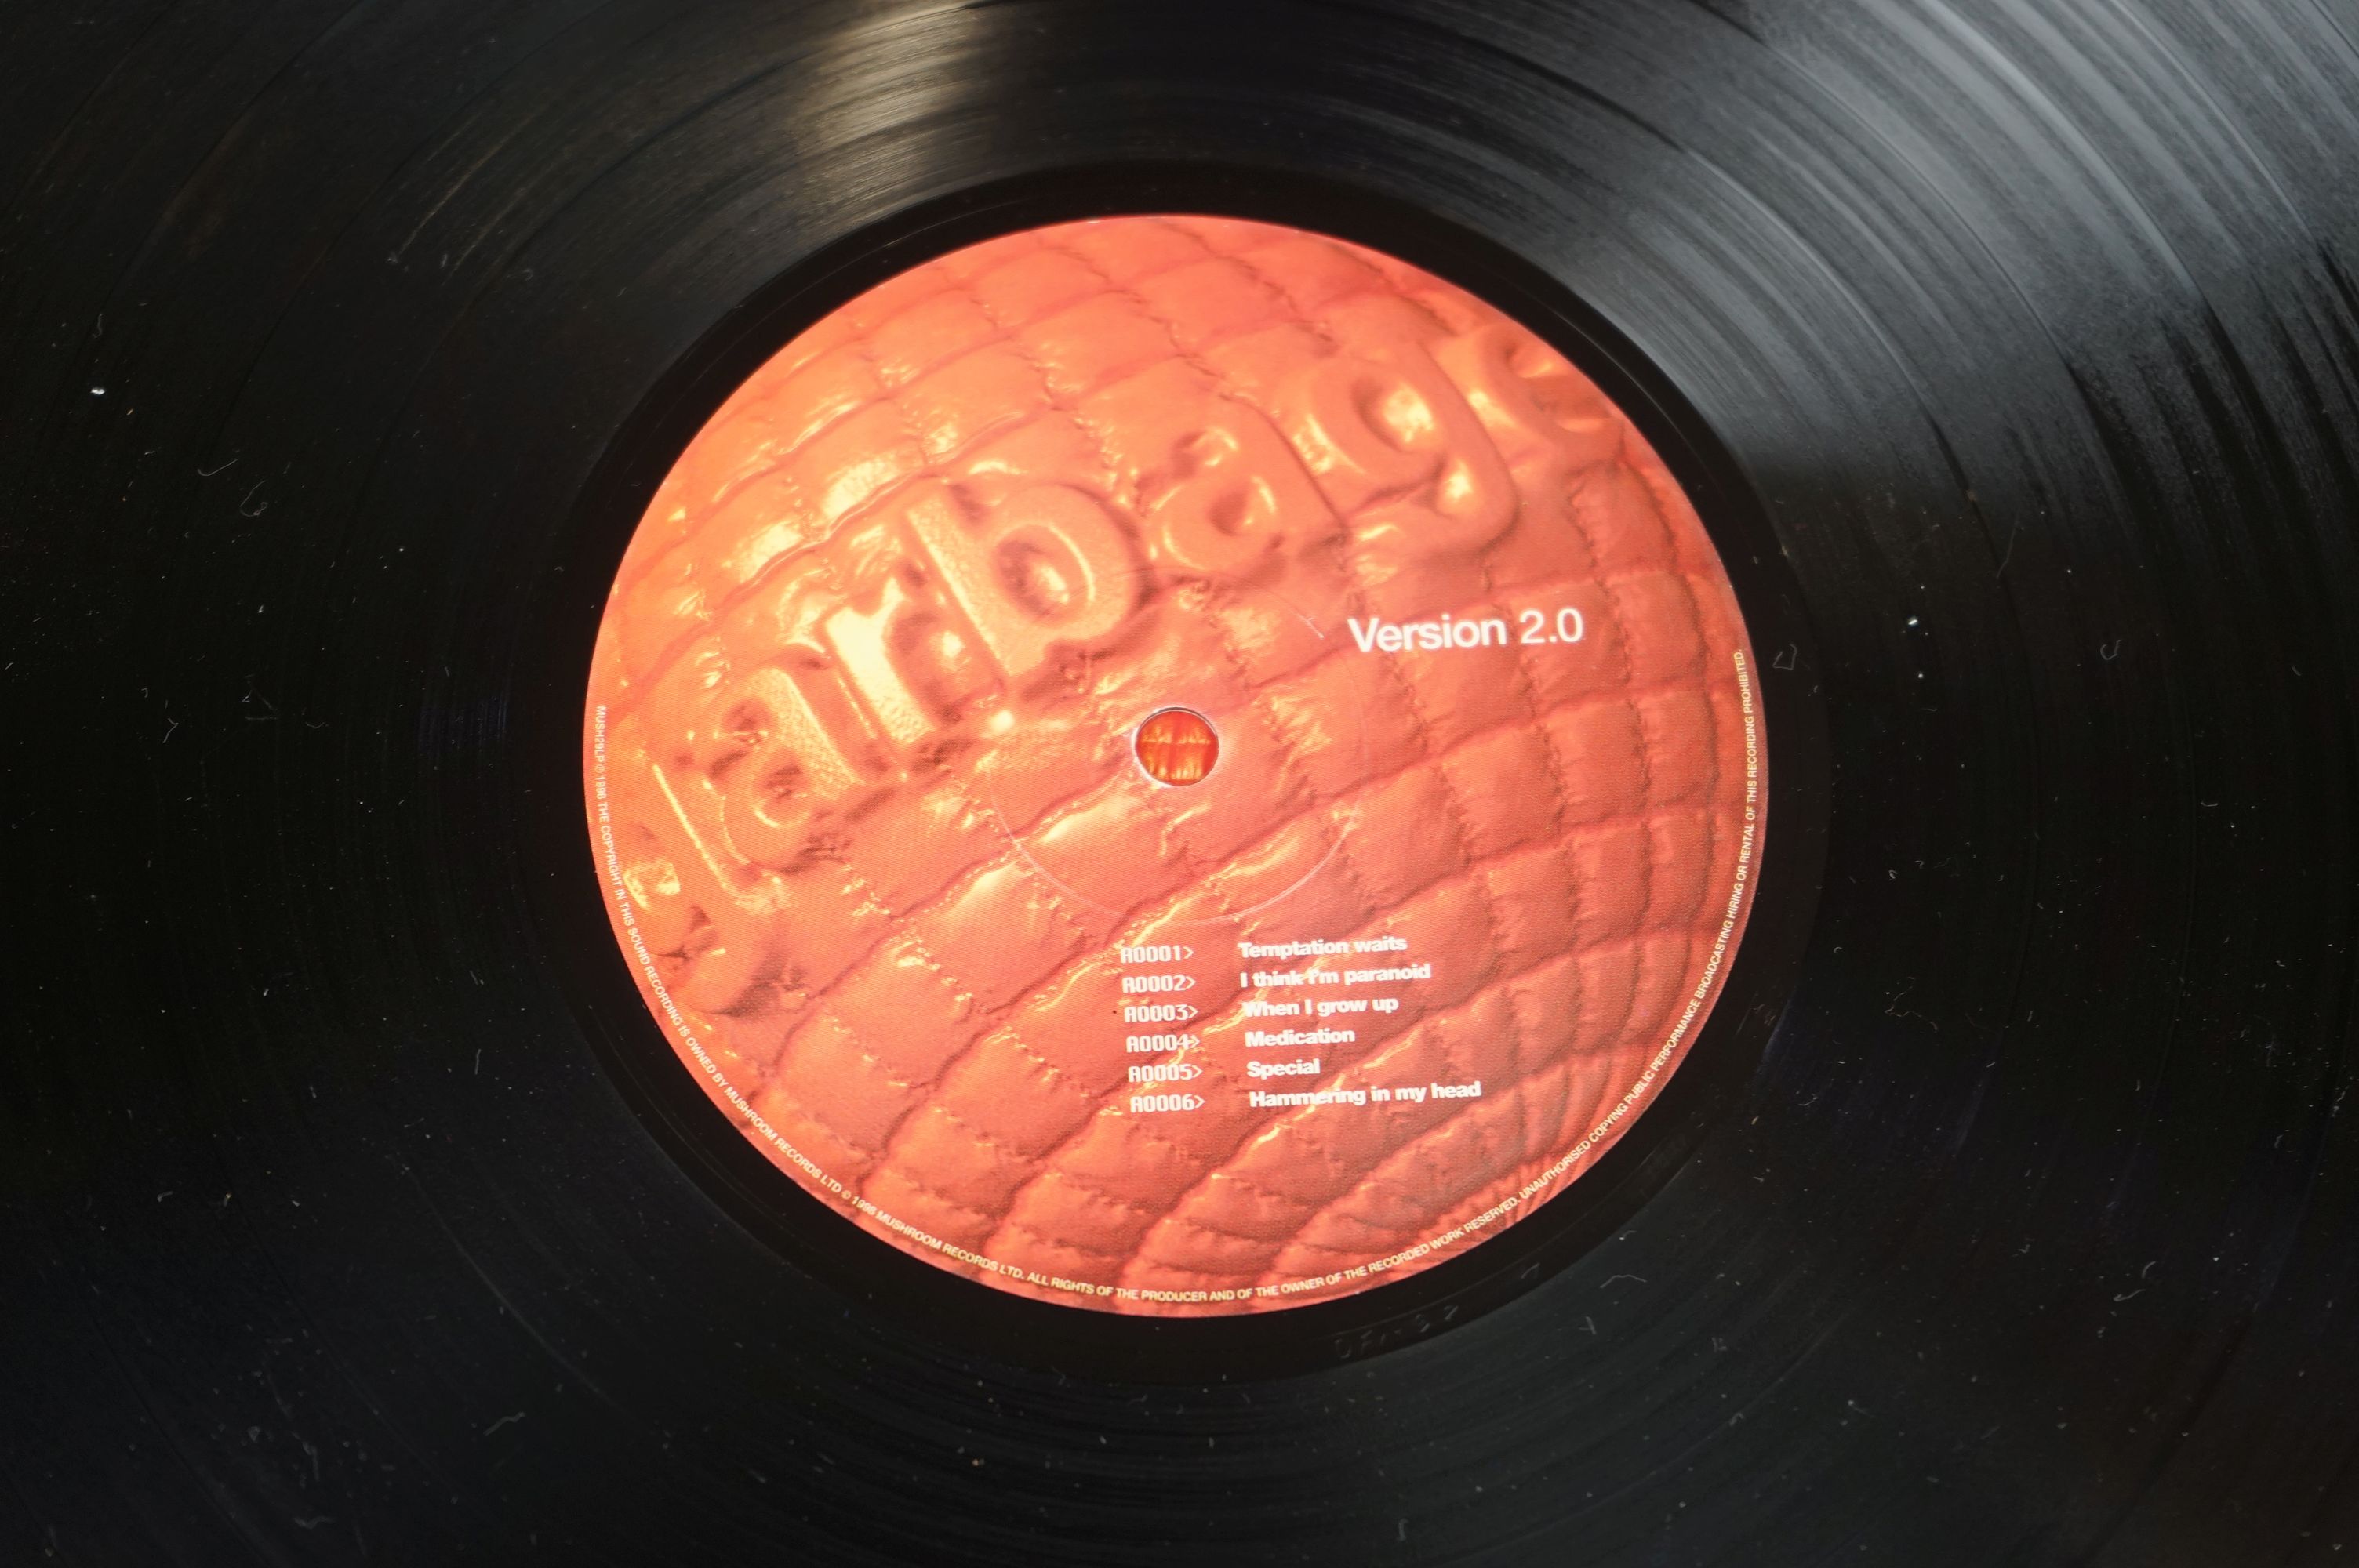 Vinyl - Garbage Version 2.0 LP on Mushroom MUSH29LP, with inner sleeve, sleeve vg+, vinyl ex - Image 6 of 8